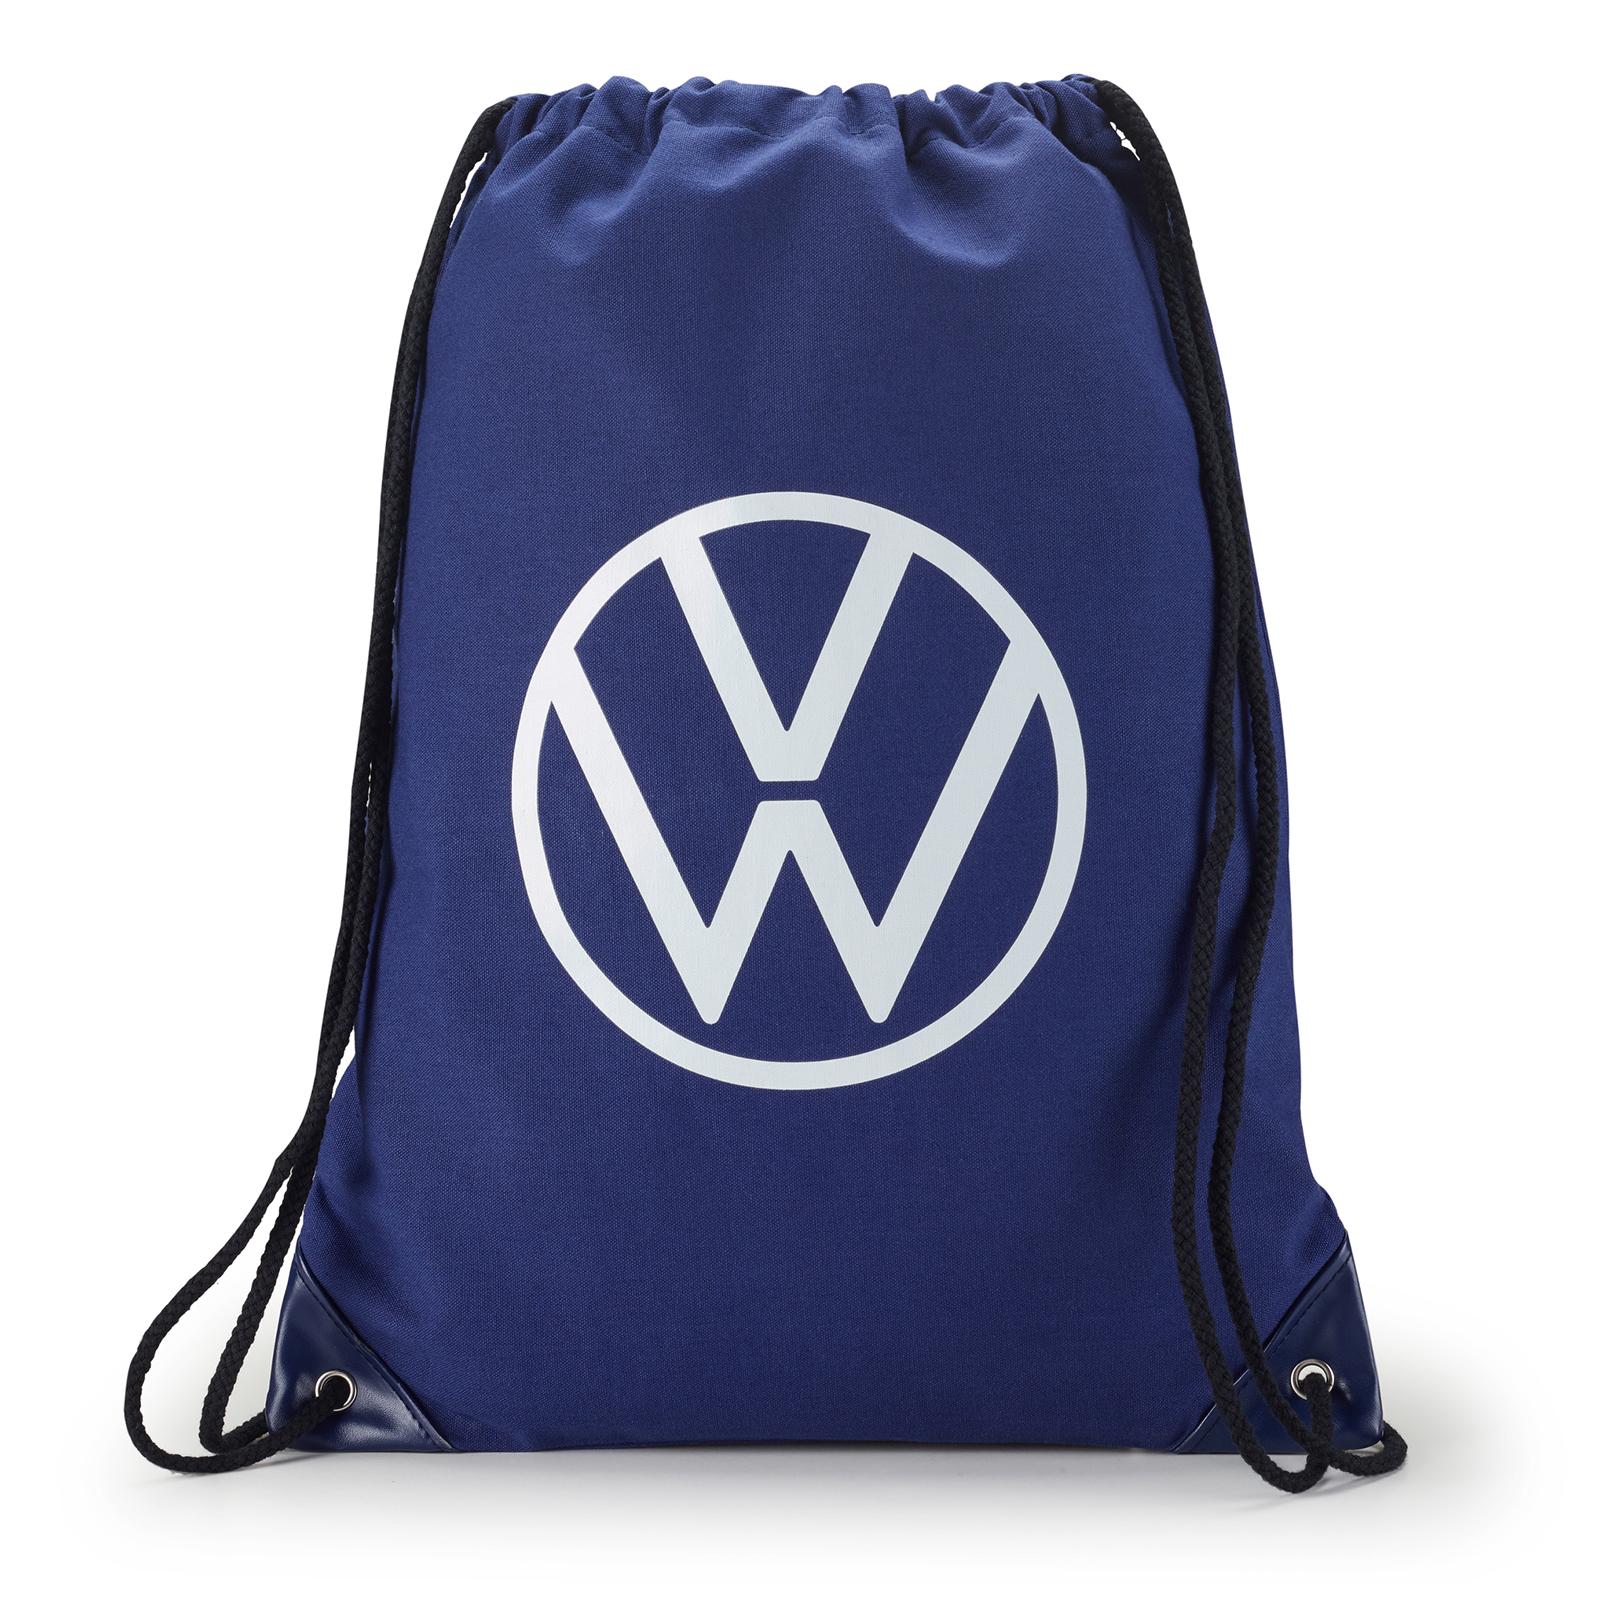 Sacco Volkswagen sportivo blu da palestra con logo Volkswagen Accessori originali